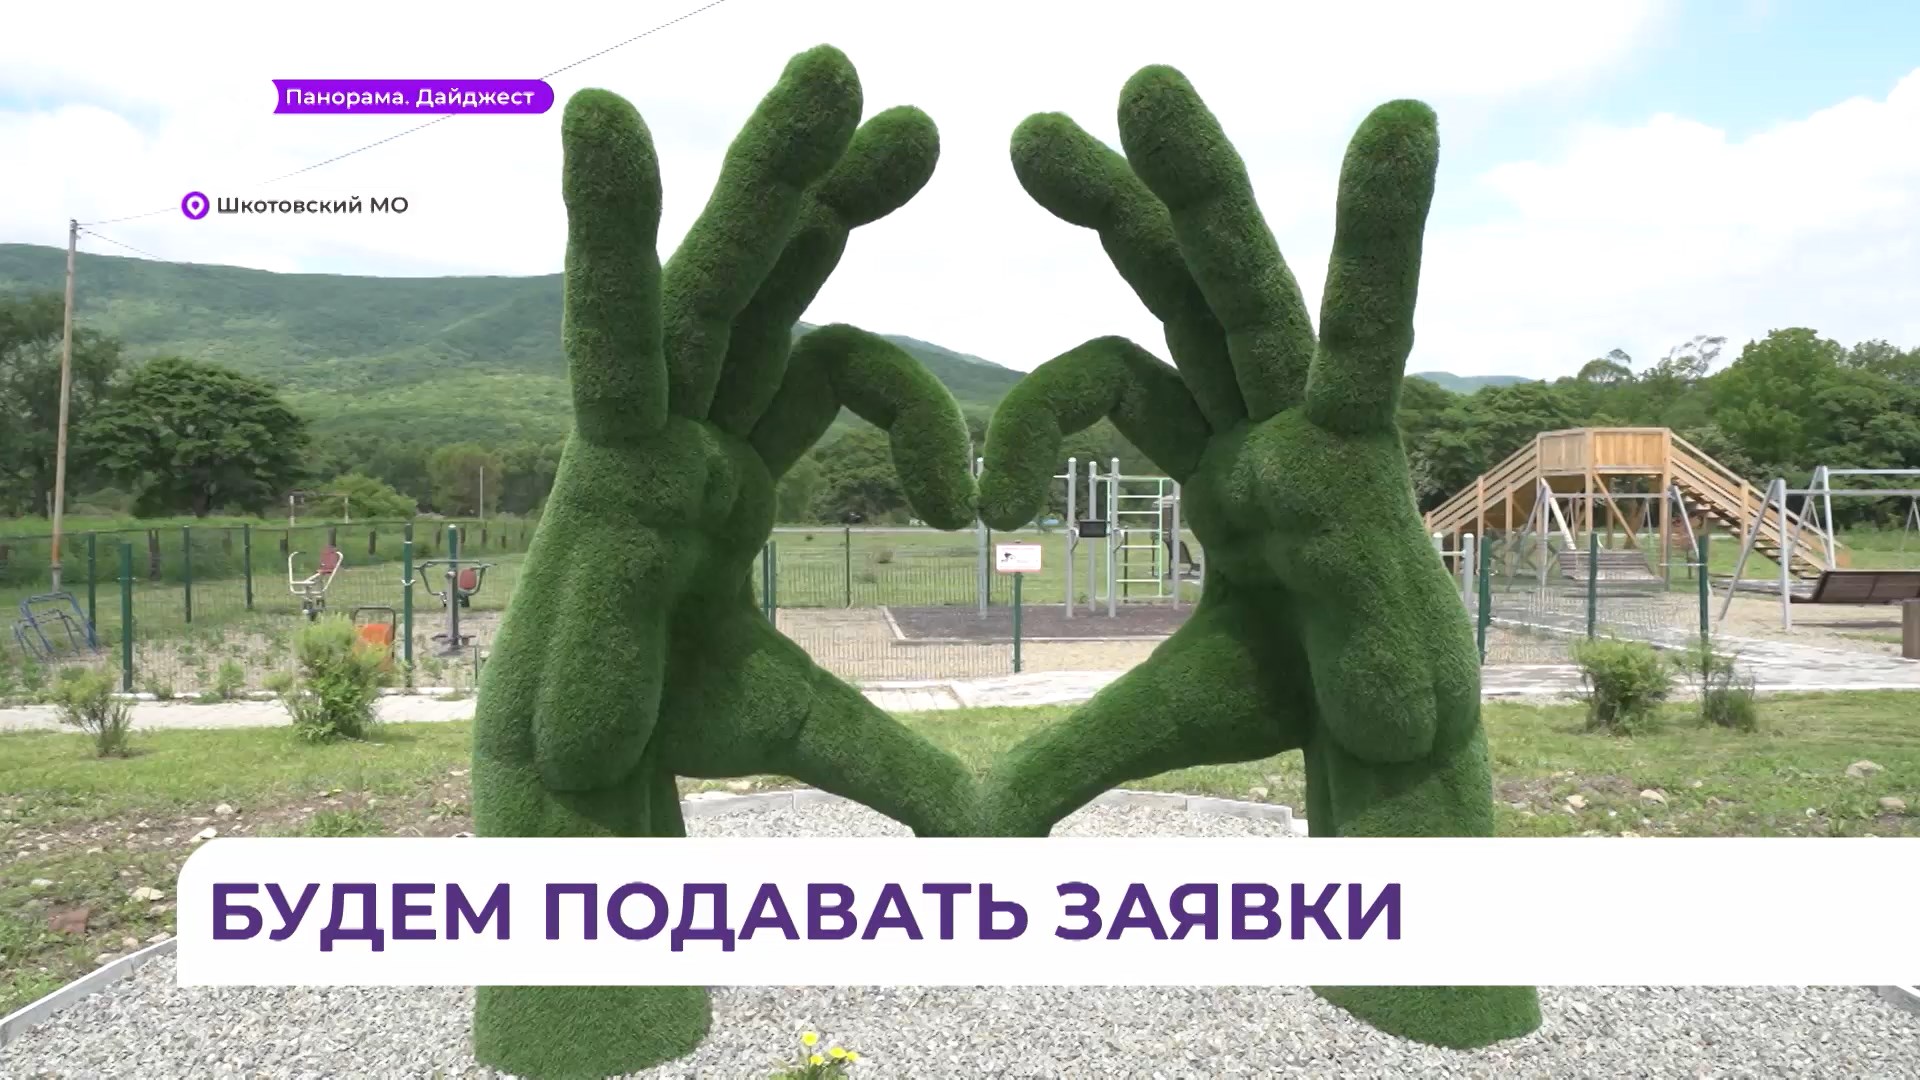 Парк в селе Центральное Шкотовского округа появился по инициативе местных жителей